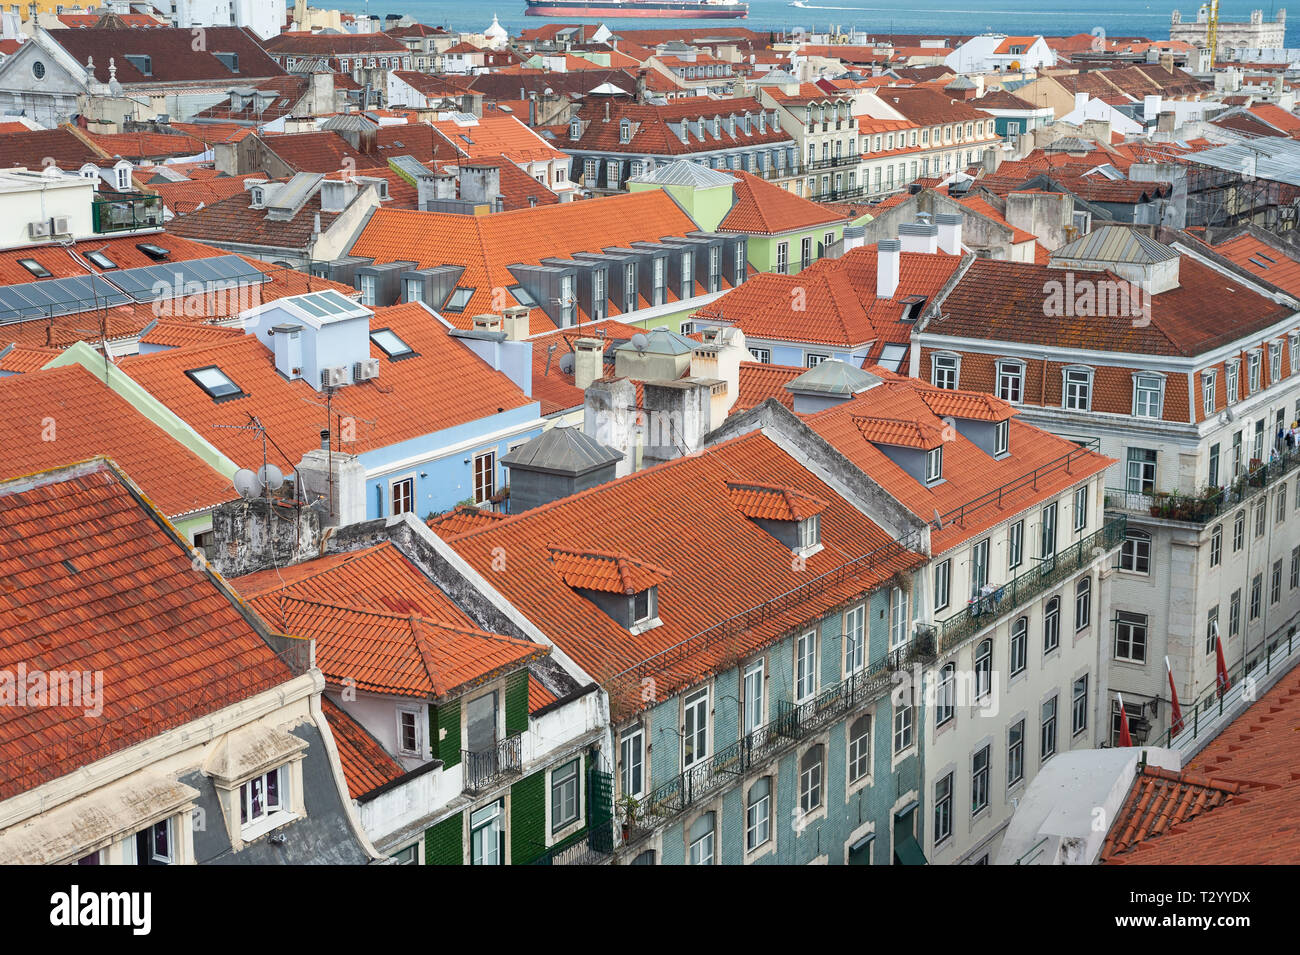 11.06.2018, Lissabon, Portugal, Europa - einen erhöhten Blick auf die Gebäude im historischen Stadtteil Baixa. Stockfoto